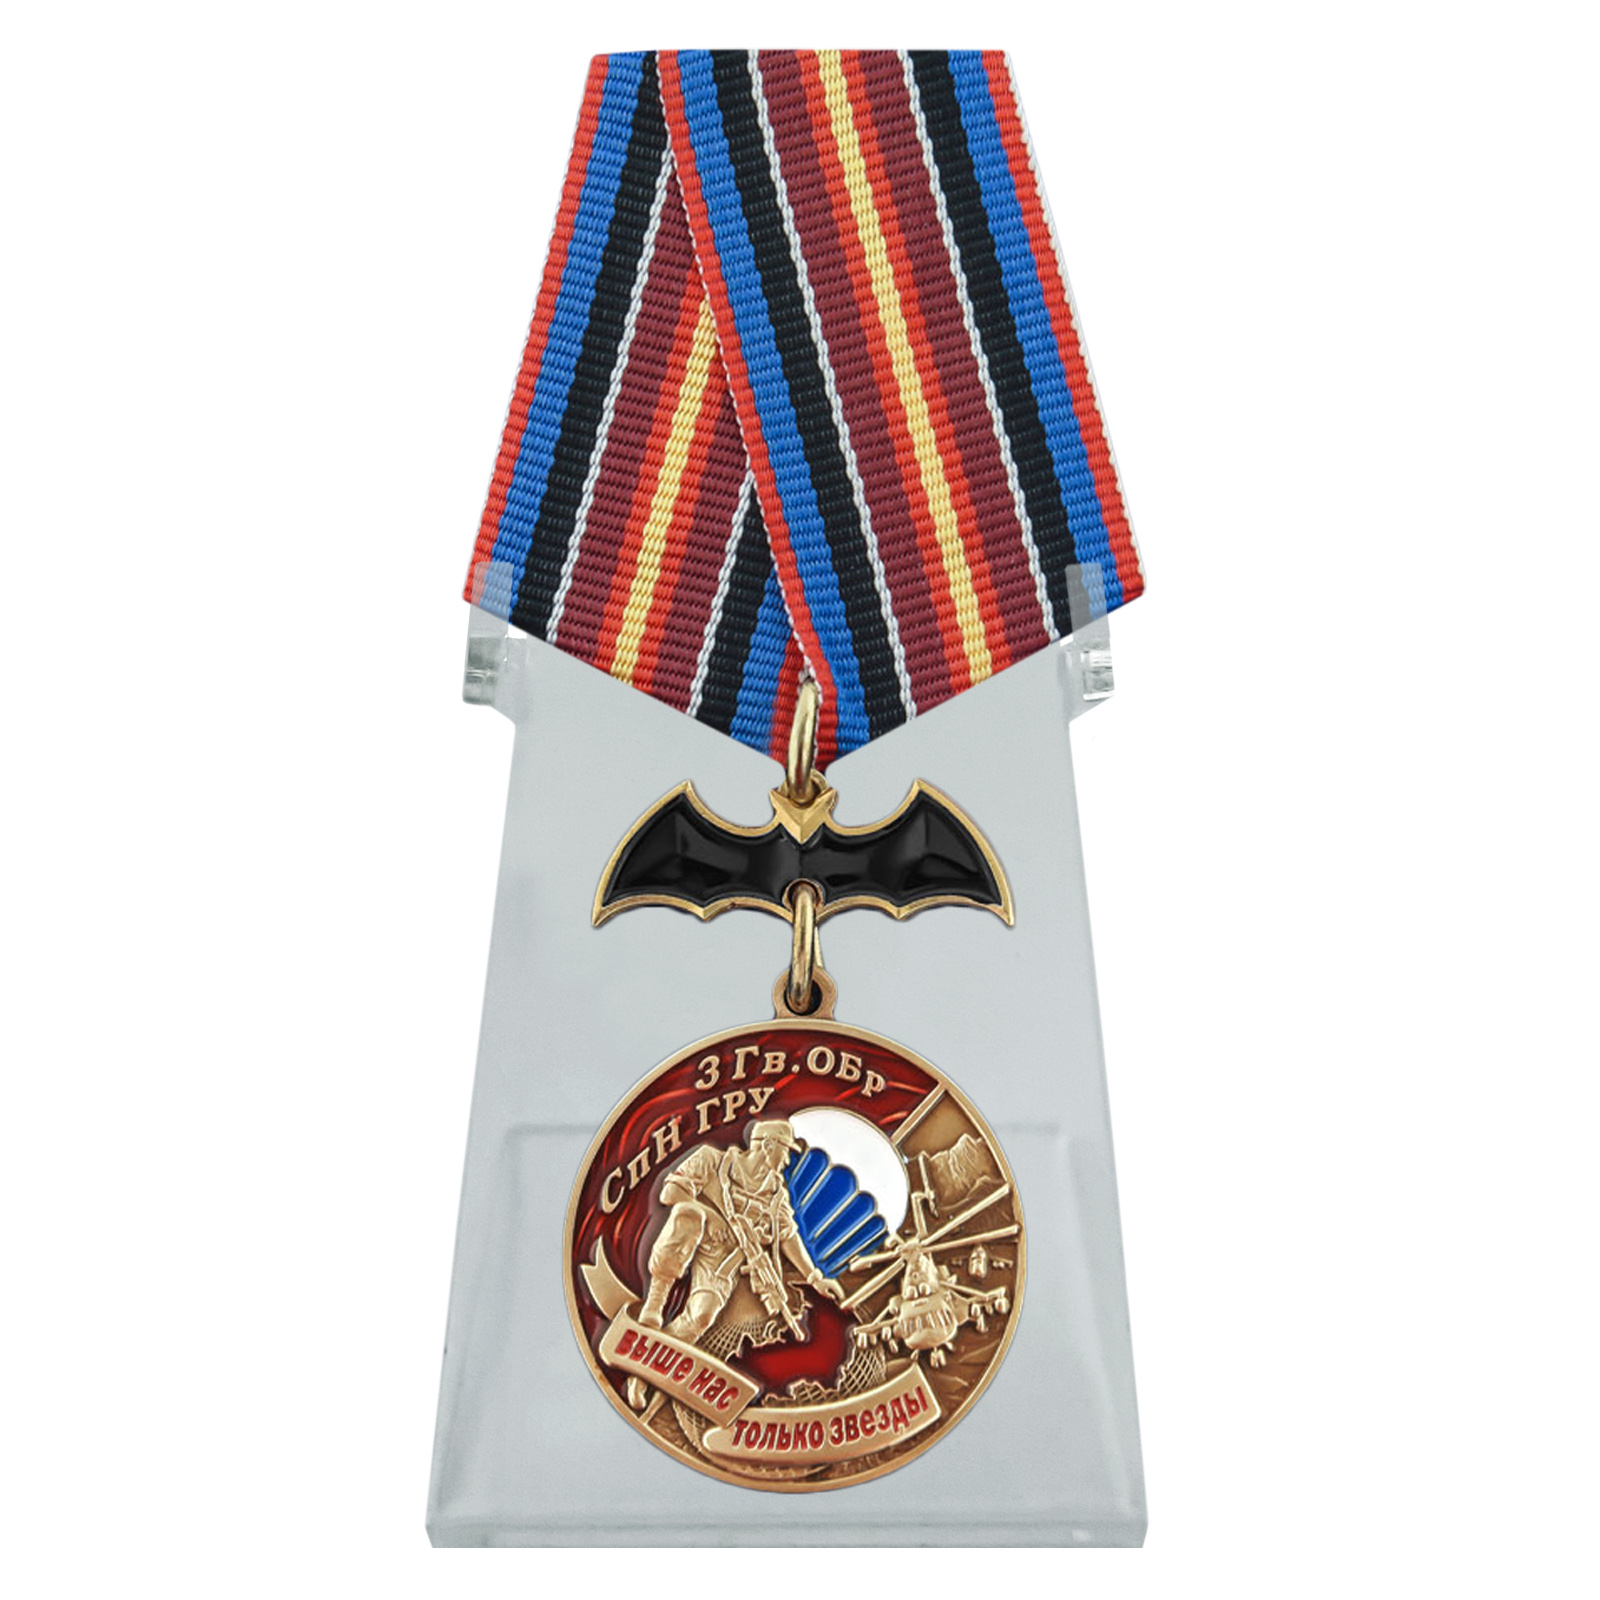 Купить медаль 3 Гв. ОБрСпН ГРУ на подставке онлайн